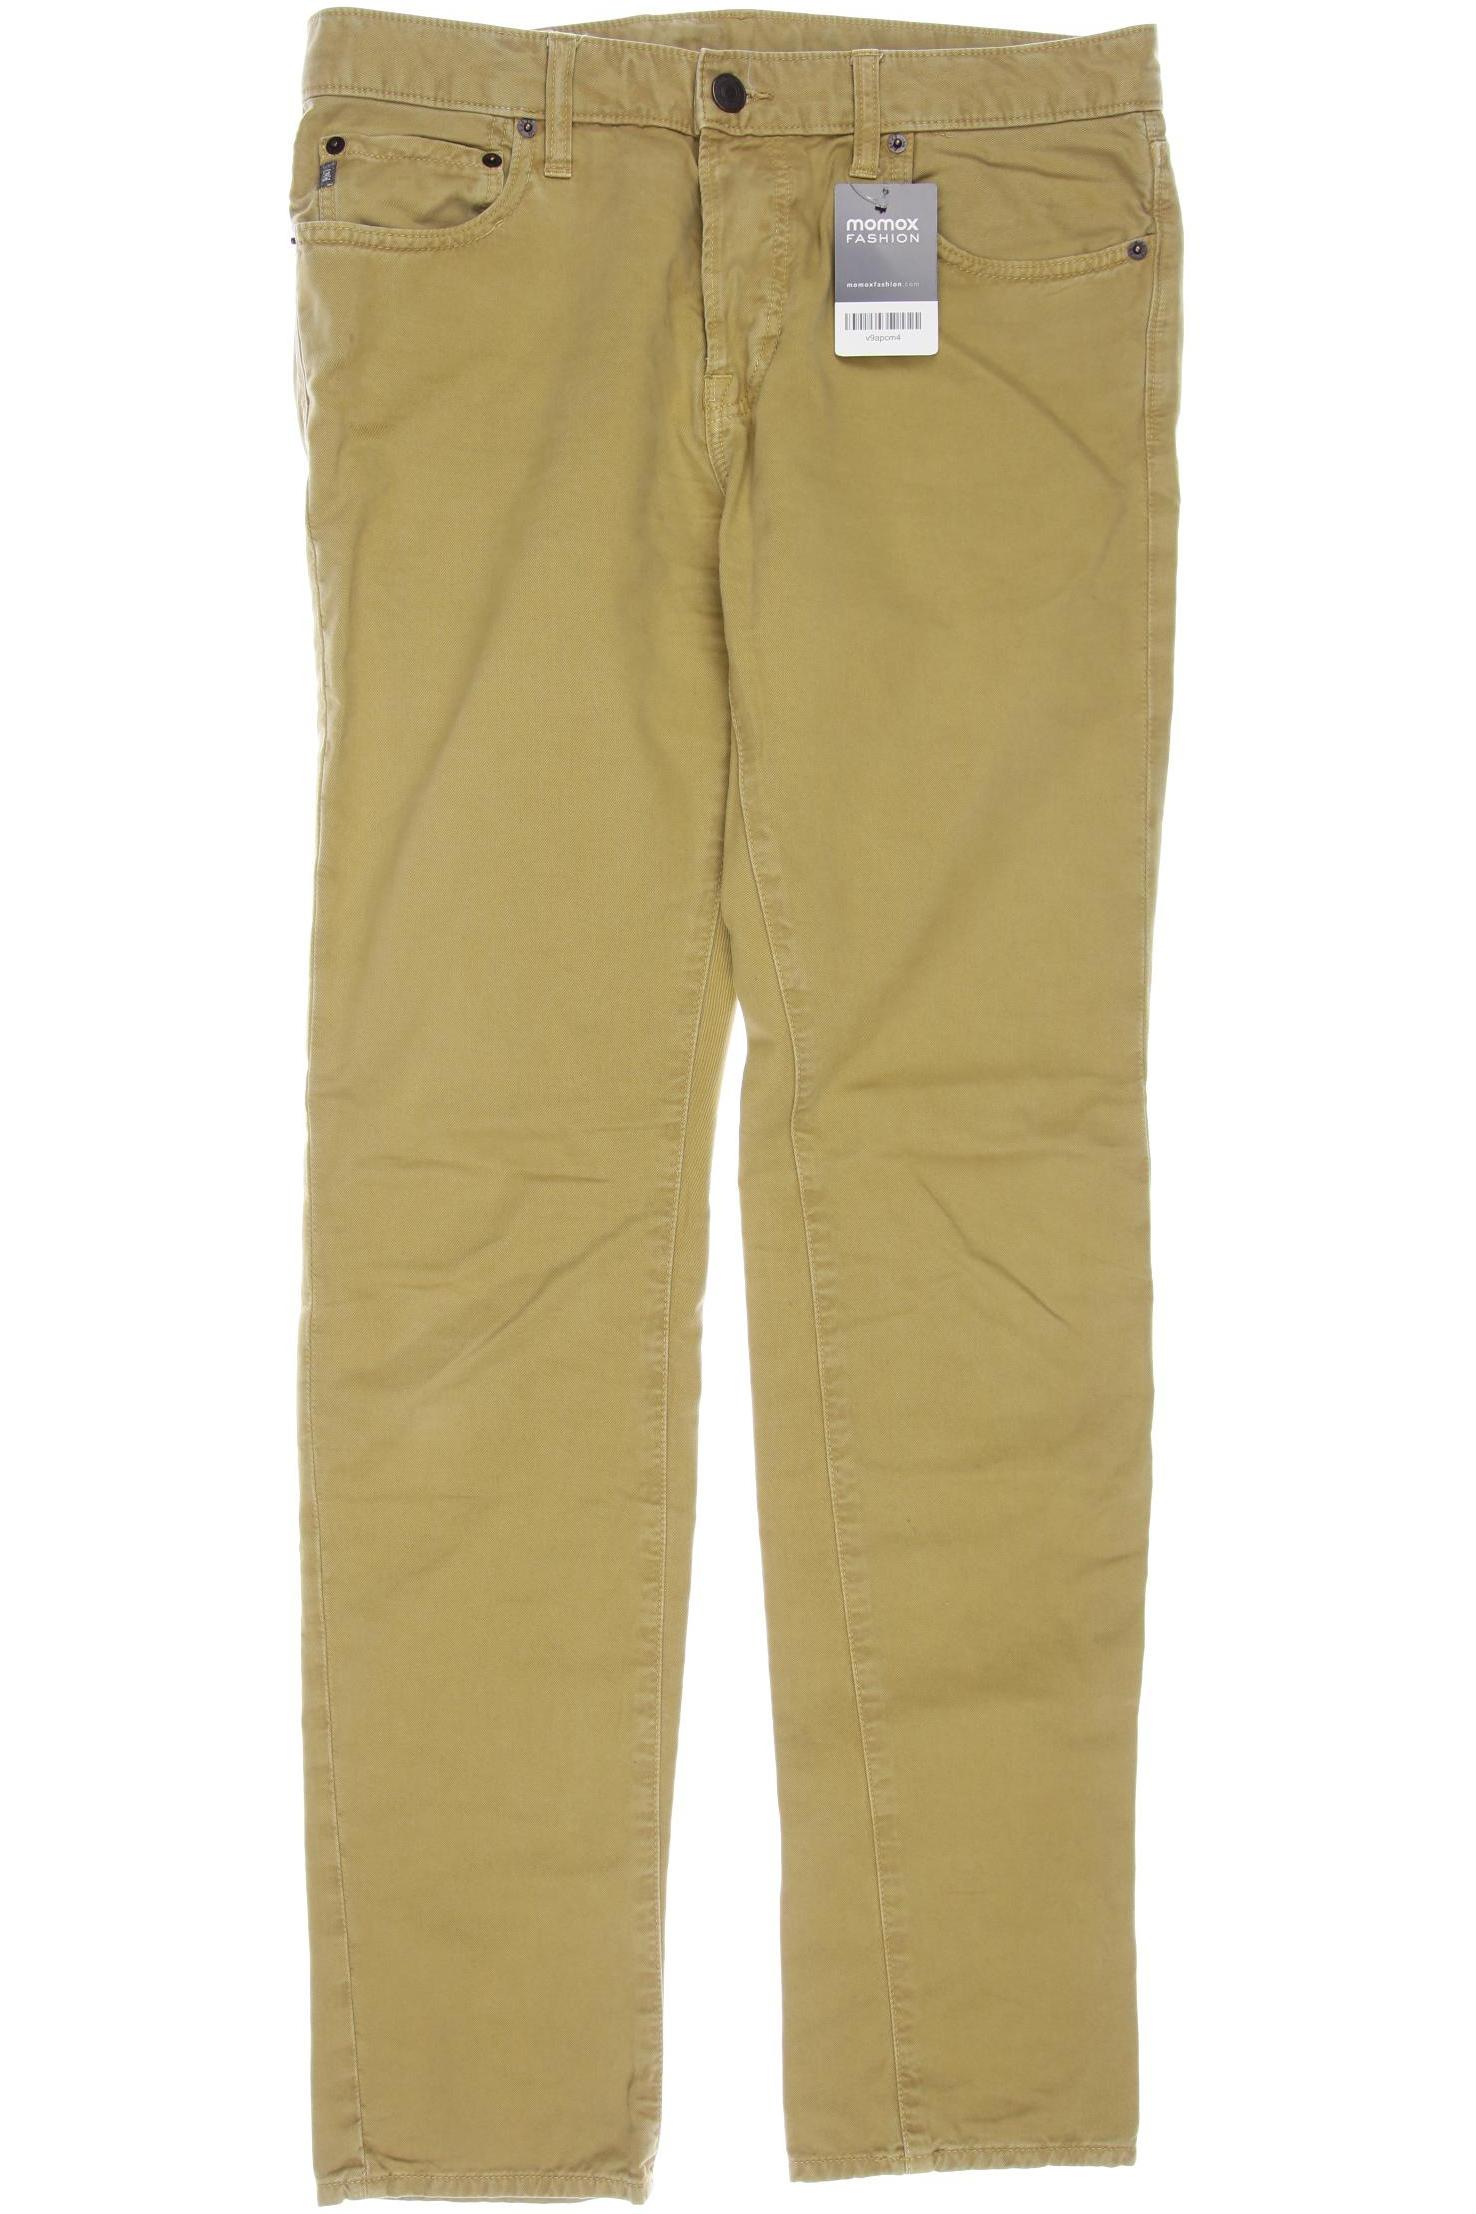 Abercrombie & Fitch Herren Jeans, beige von Abercrombie & Fitch